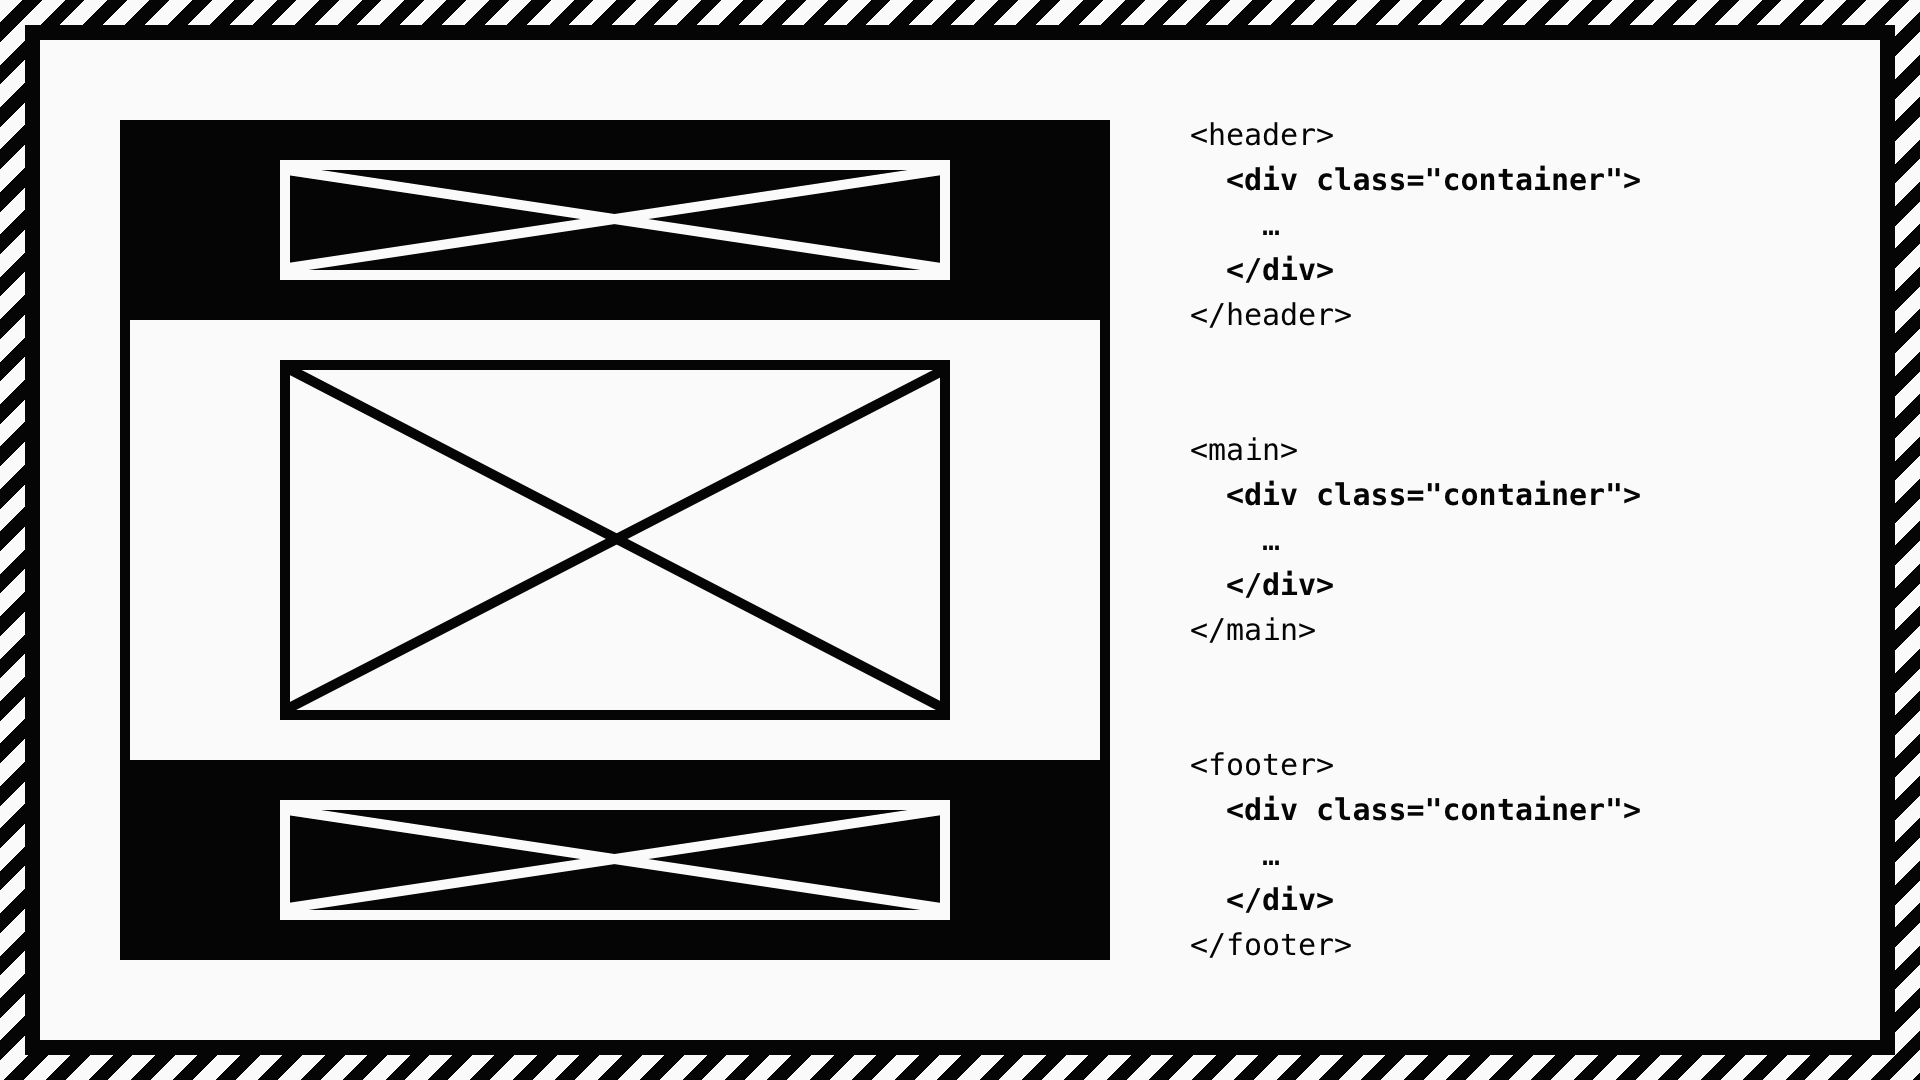 <header>・<main>・<footer>のそれぞれの要素の中にcontainerクラスがついた<div>要素が入れ子になっている。